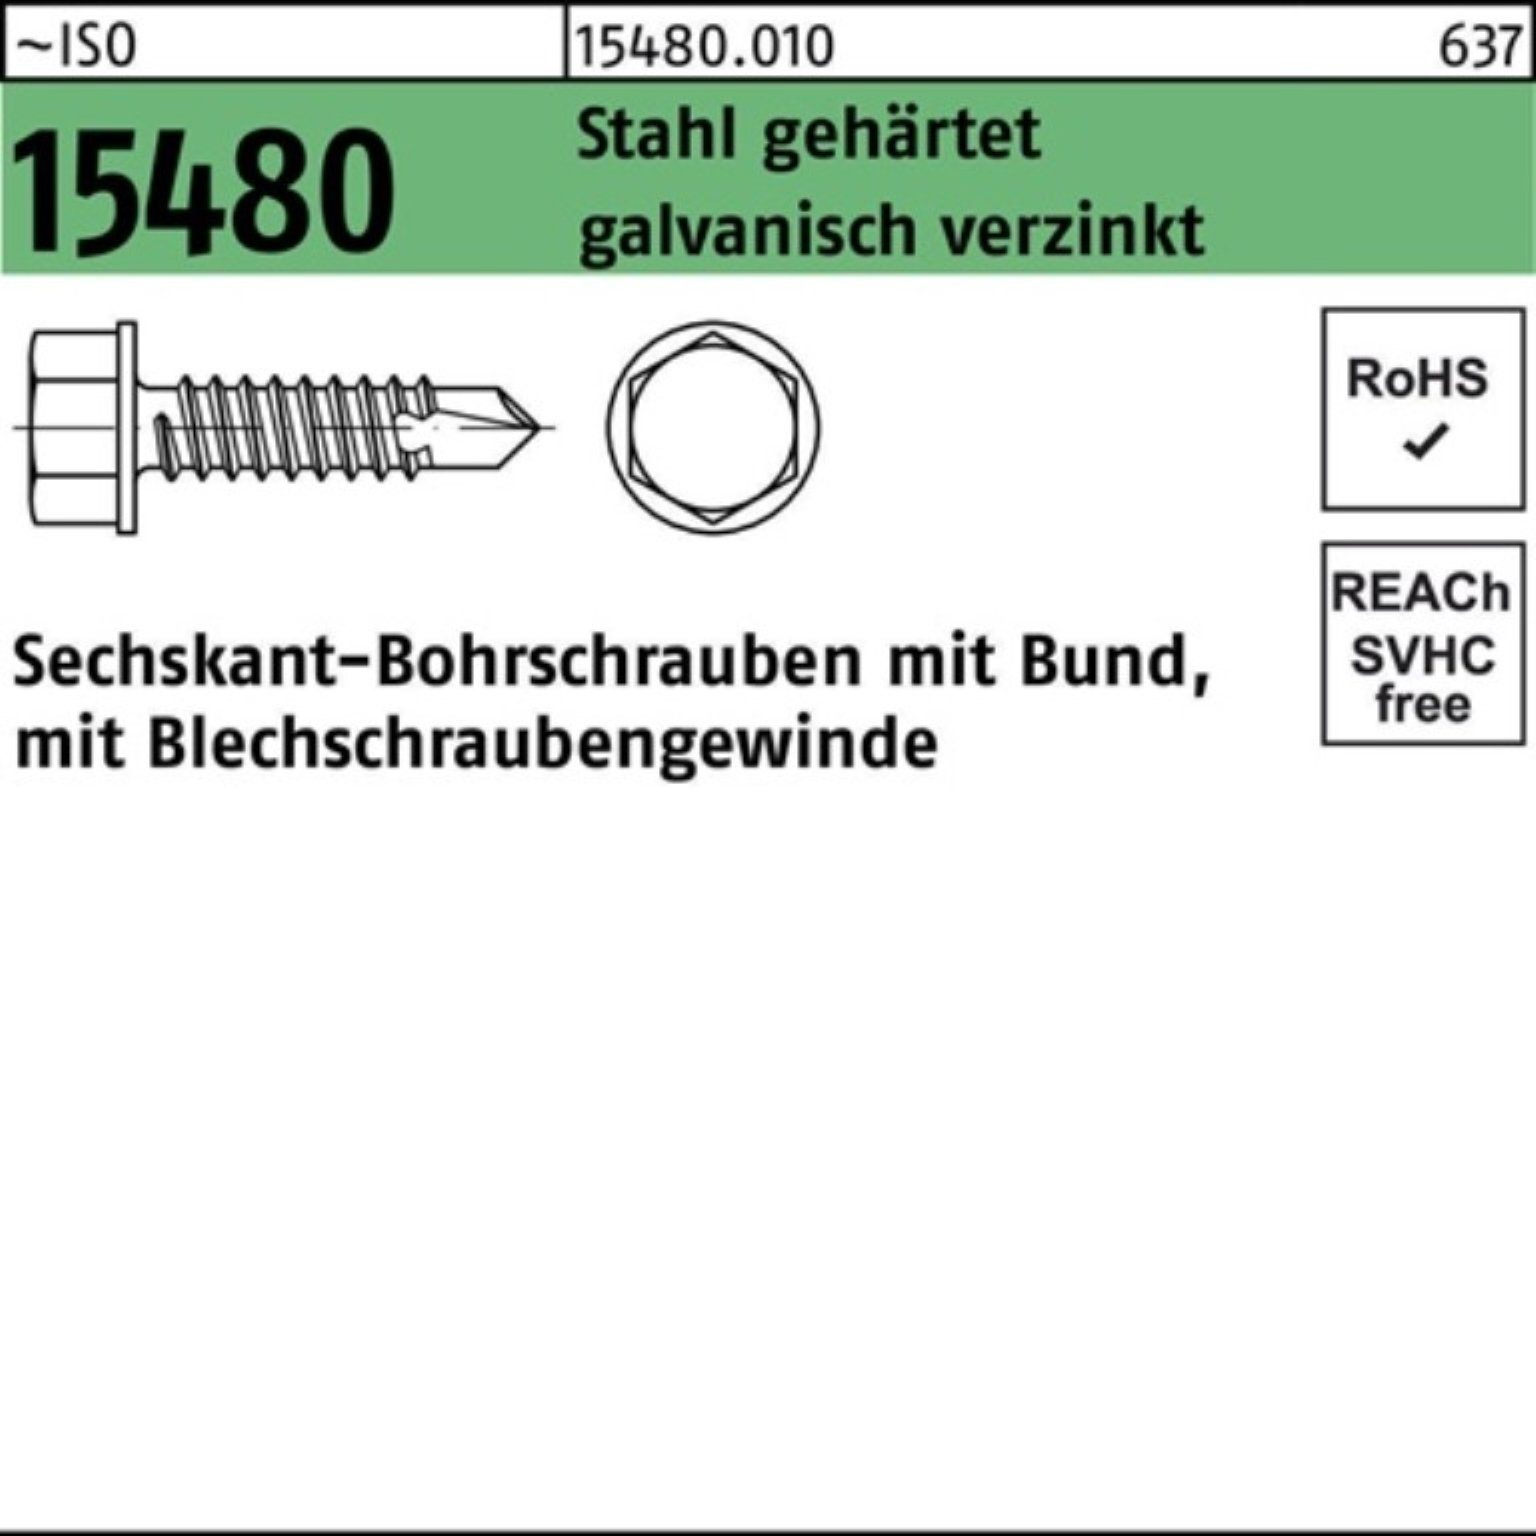 Reyher Bohrschraube 500er Pack ISO gehär Stahl Sechskantbohrschraube 15480 Bund 4,8x50 ST